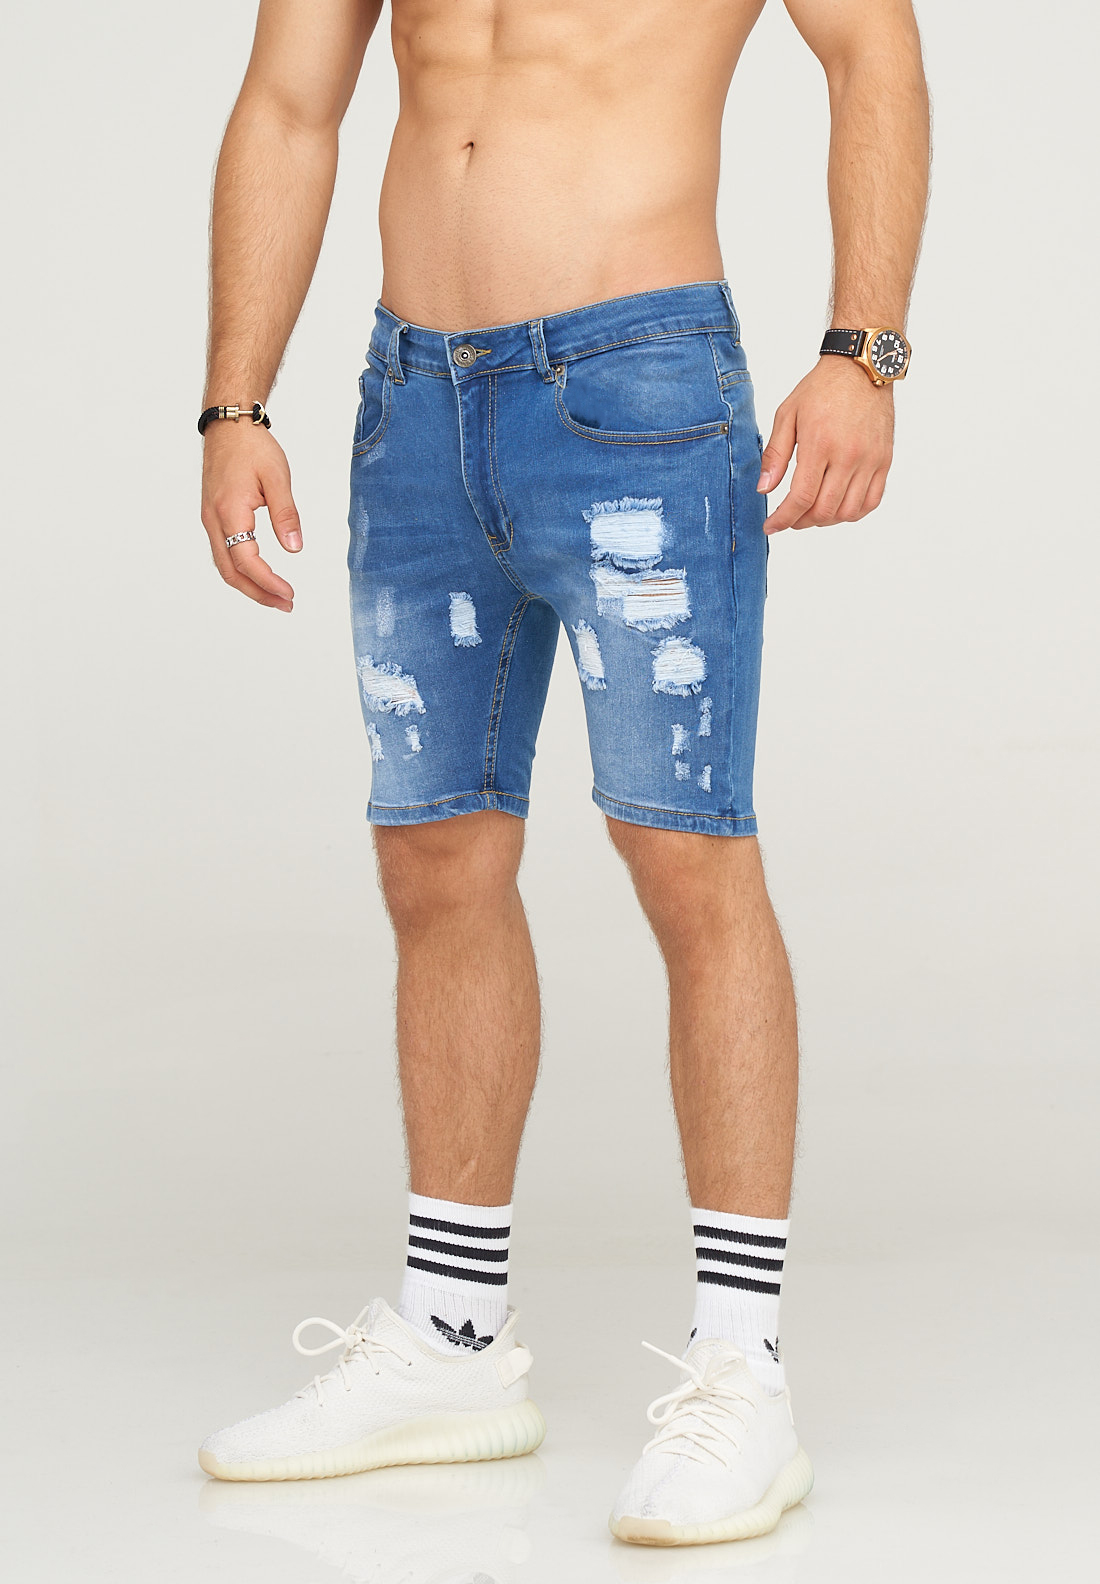 Тканевые шорты SOULSTAR Jeans- GLASGOW, цвет Mittelblau